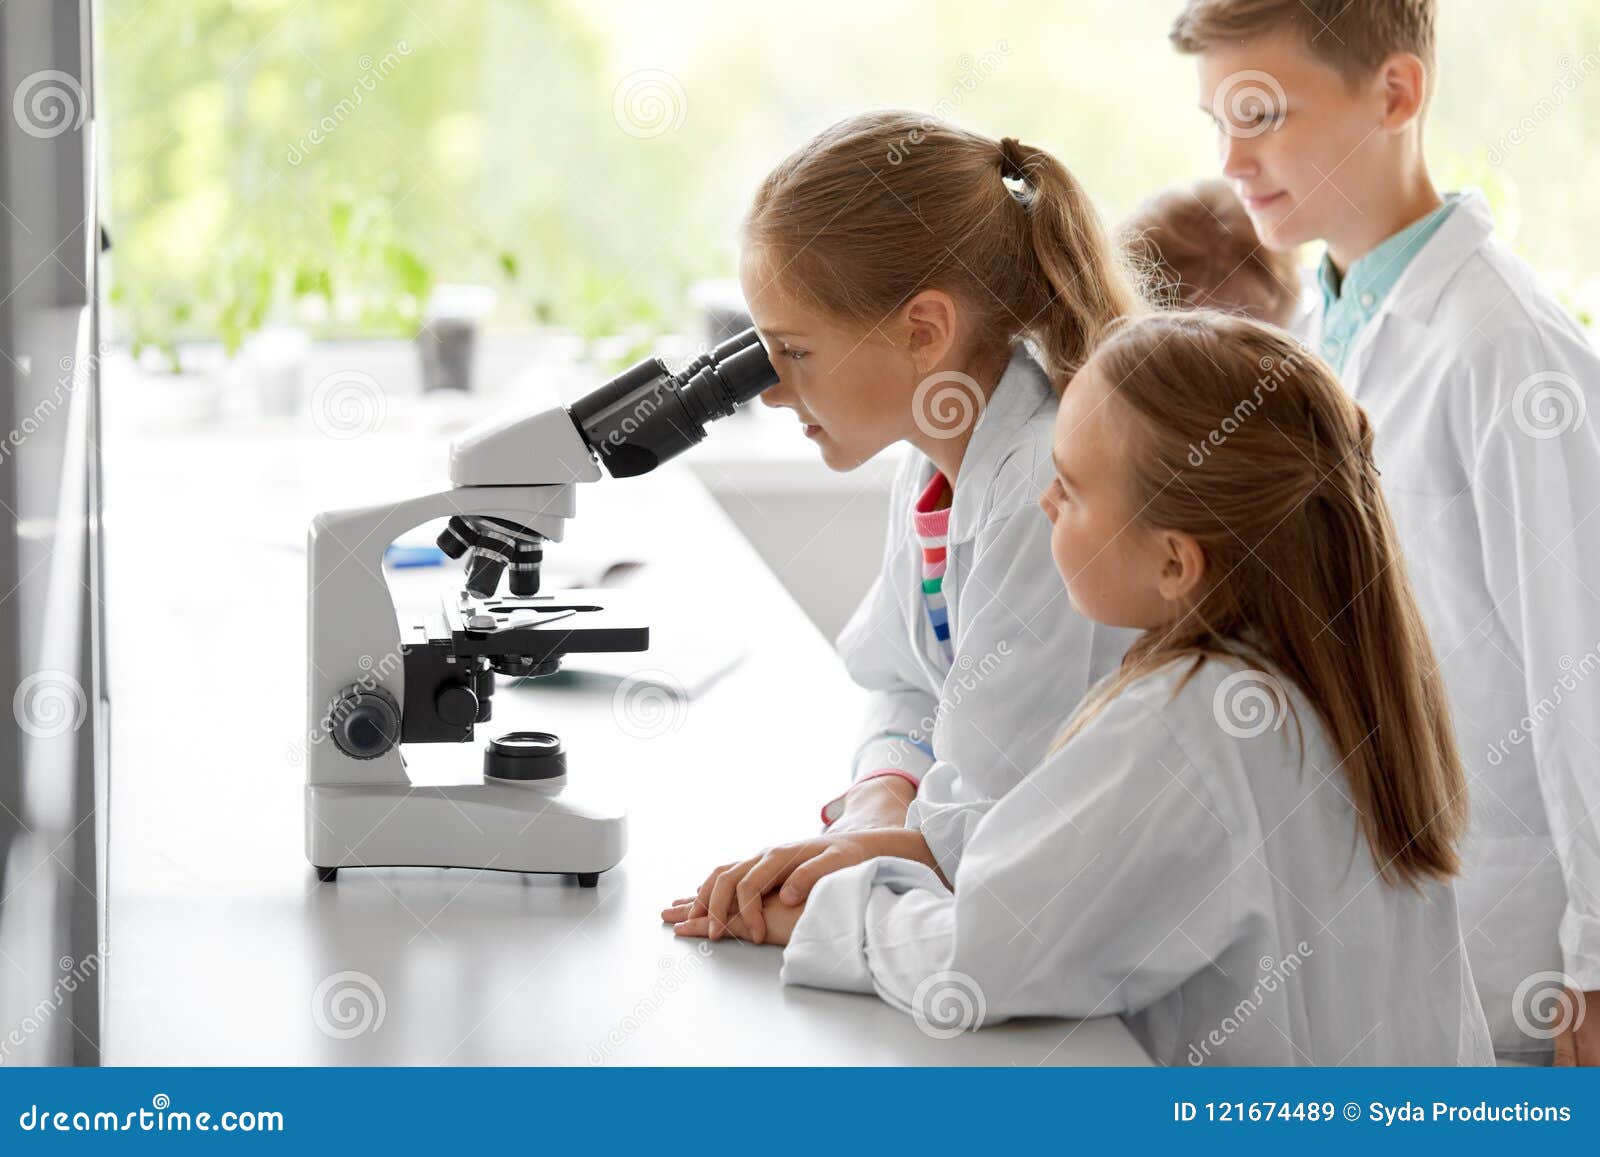 Микроскоп в школе. Микроскоп для детей. Ребенок у микроскопа в школе. Ученик с микроскопом. Аудио урок биологии